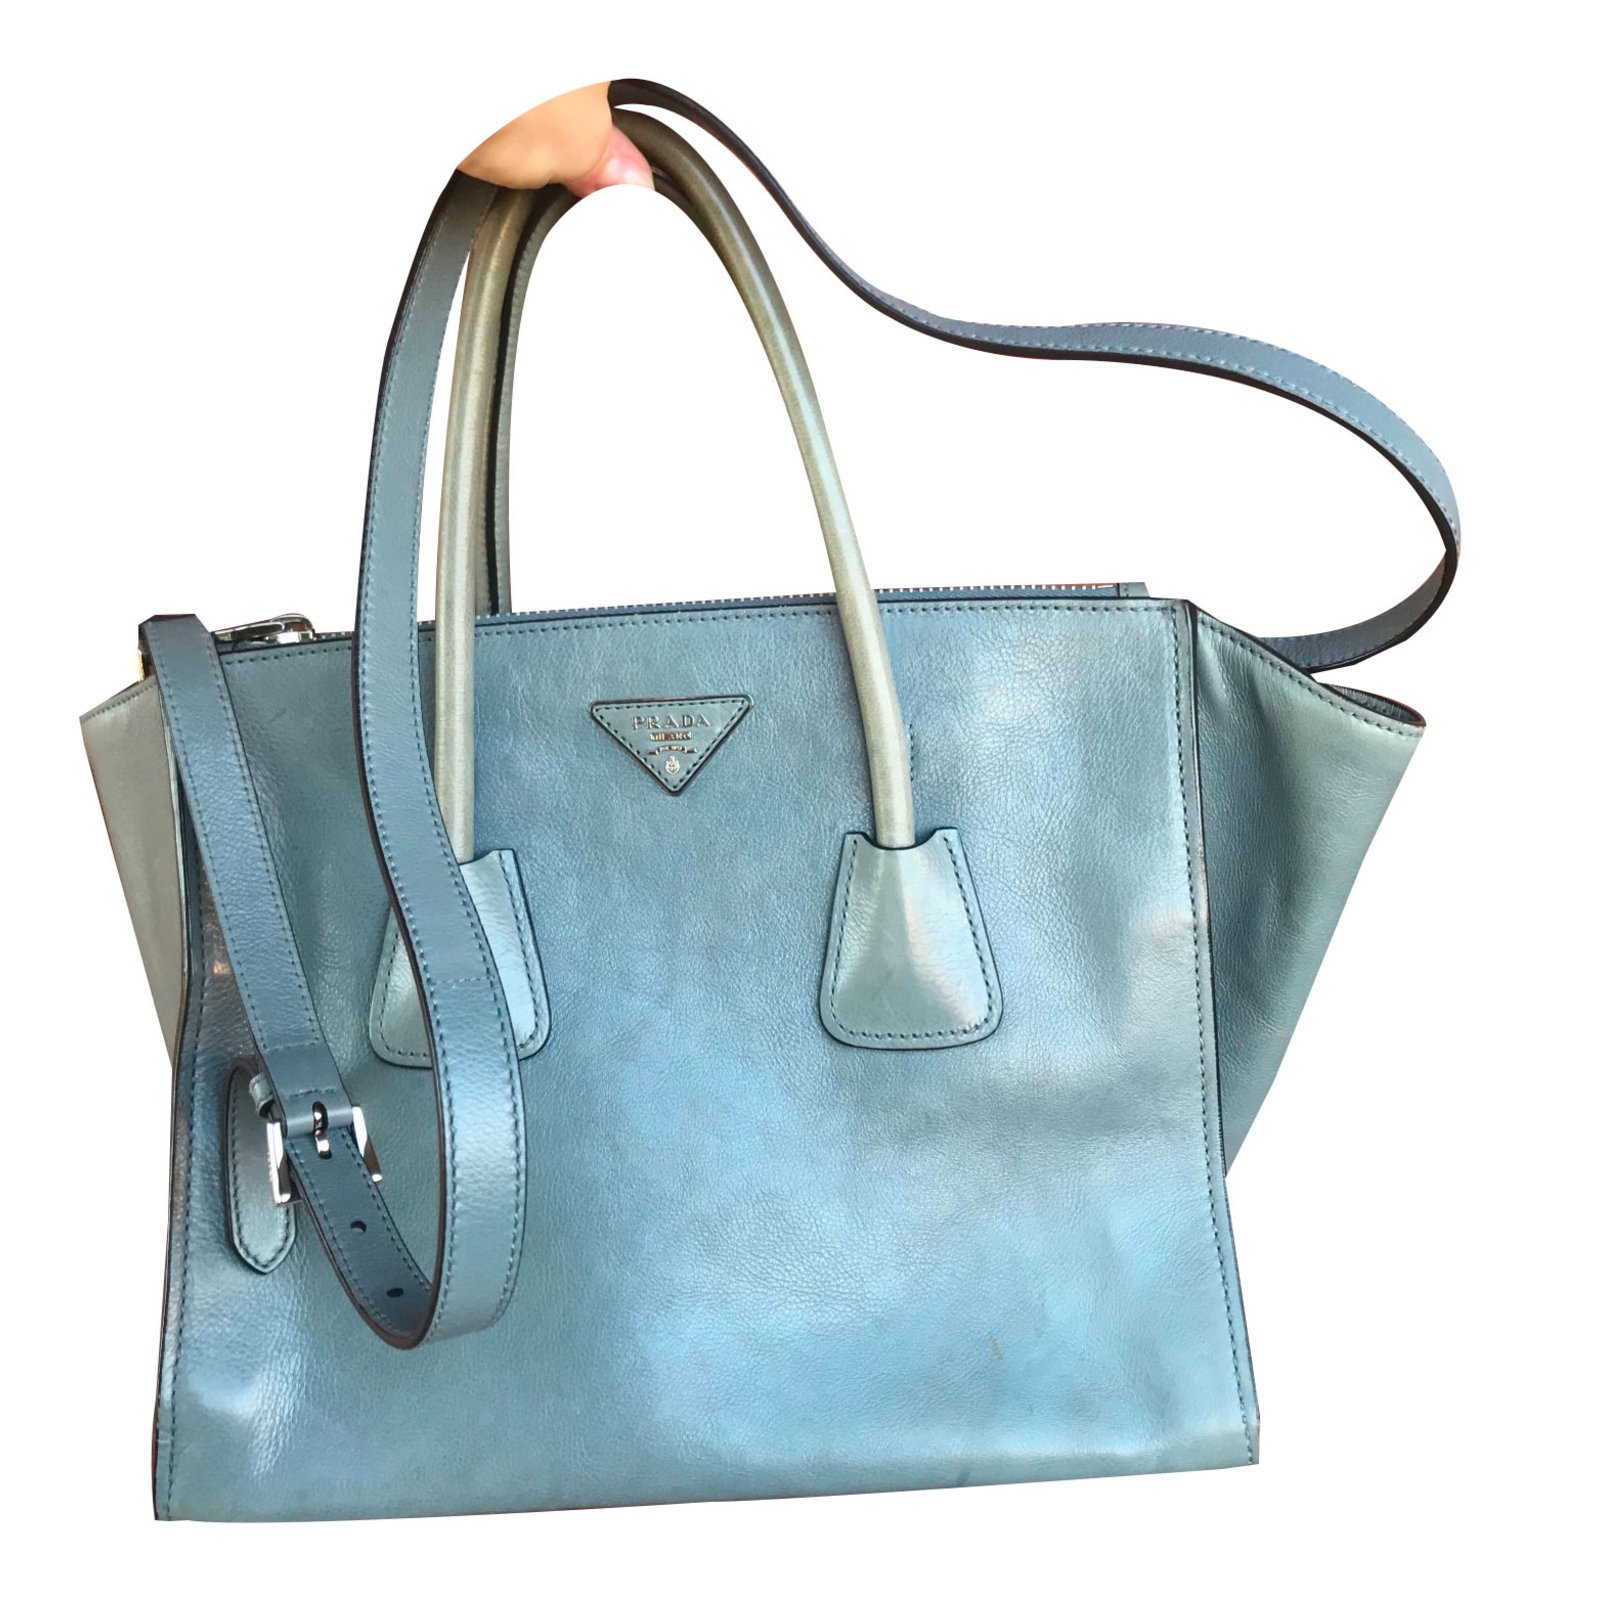 light blue prada bag